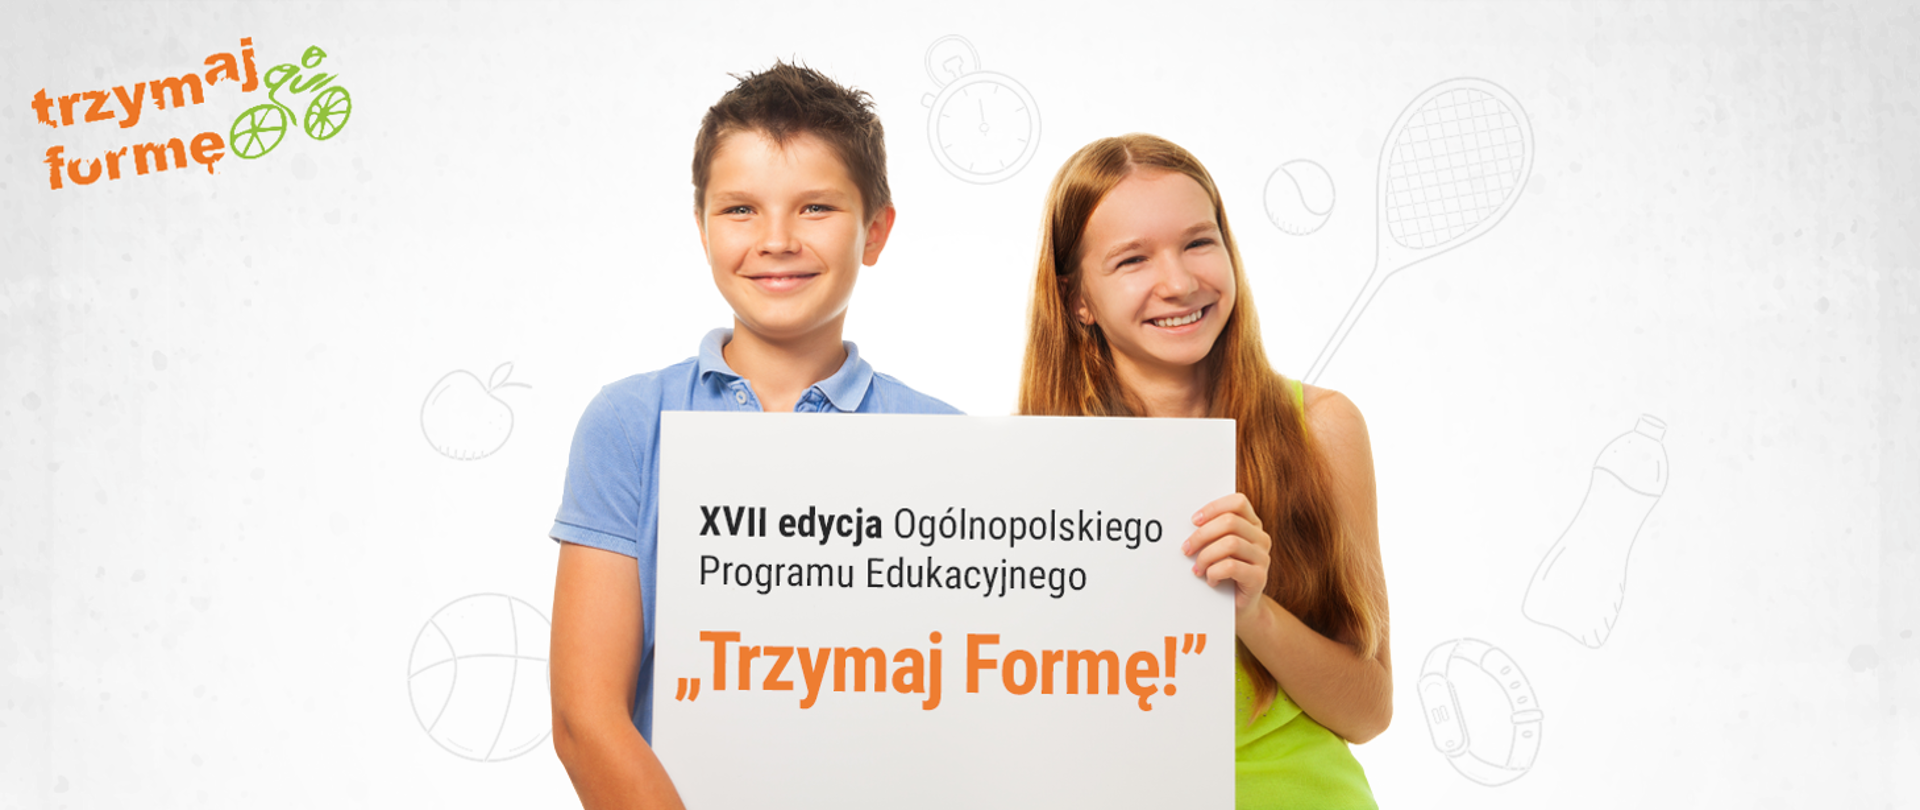 baner promujący XVII edycję Ogólnopolskiego Programu Edukacyjnego "Trzymaj formę!", na białym tle, dwoje uśmiechniętych dzieci (chłopak i dziewczyna) trzyma tabliczkę z tytułem programu